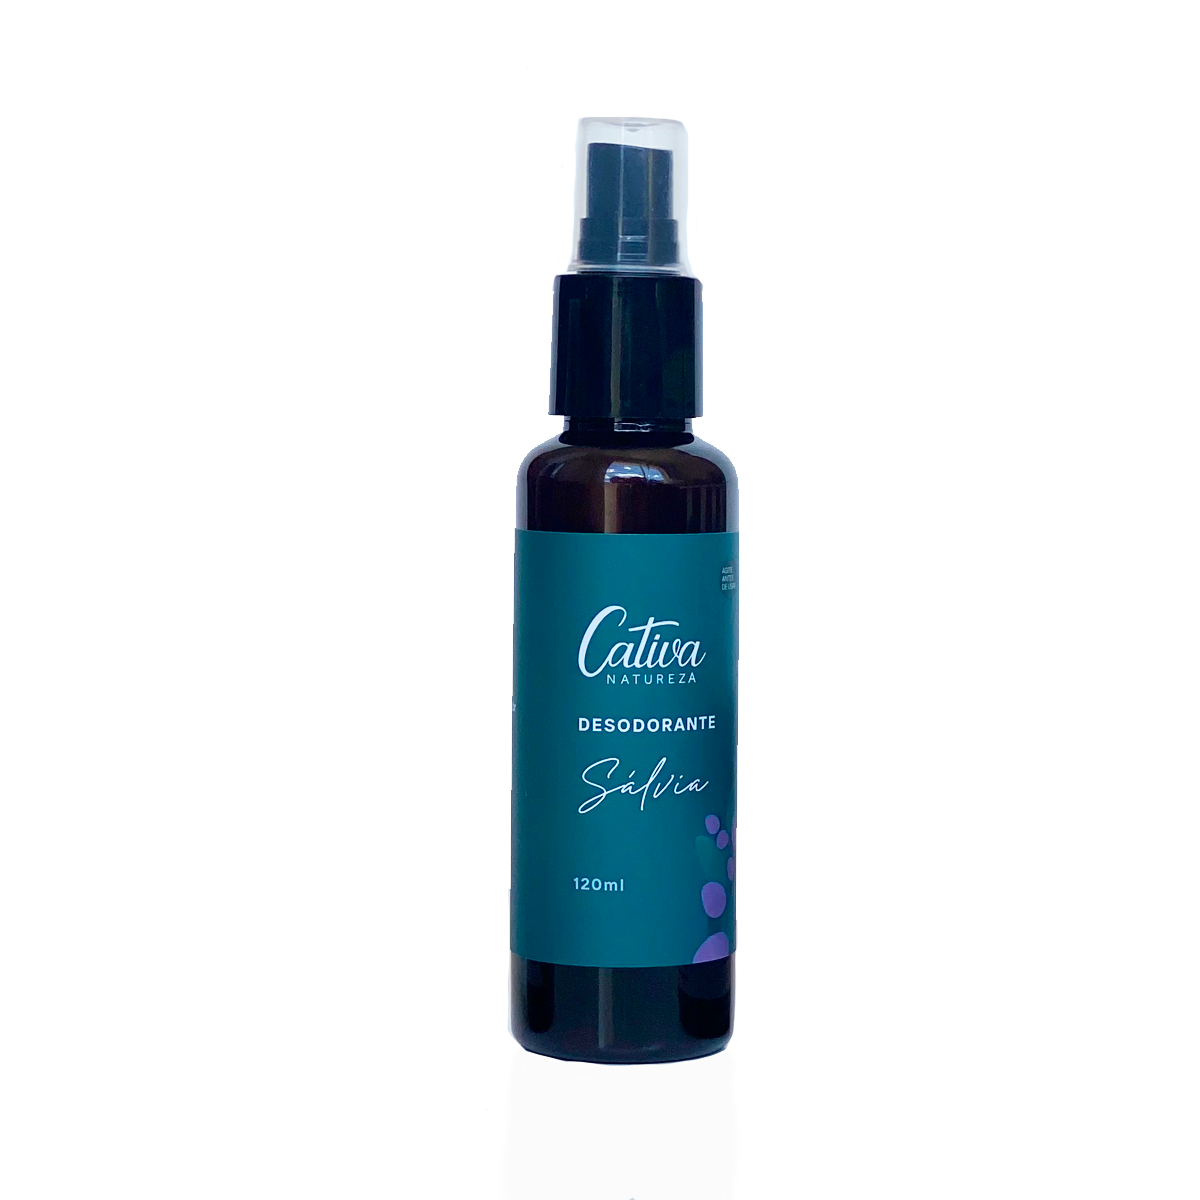 Desodorante Spray de Sálvia - Cativa - Frasco com 120ml - Mundo dos Óleos